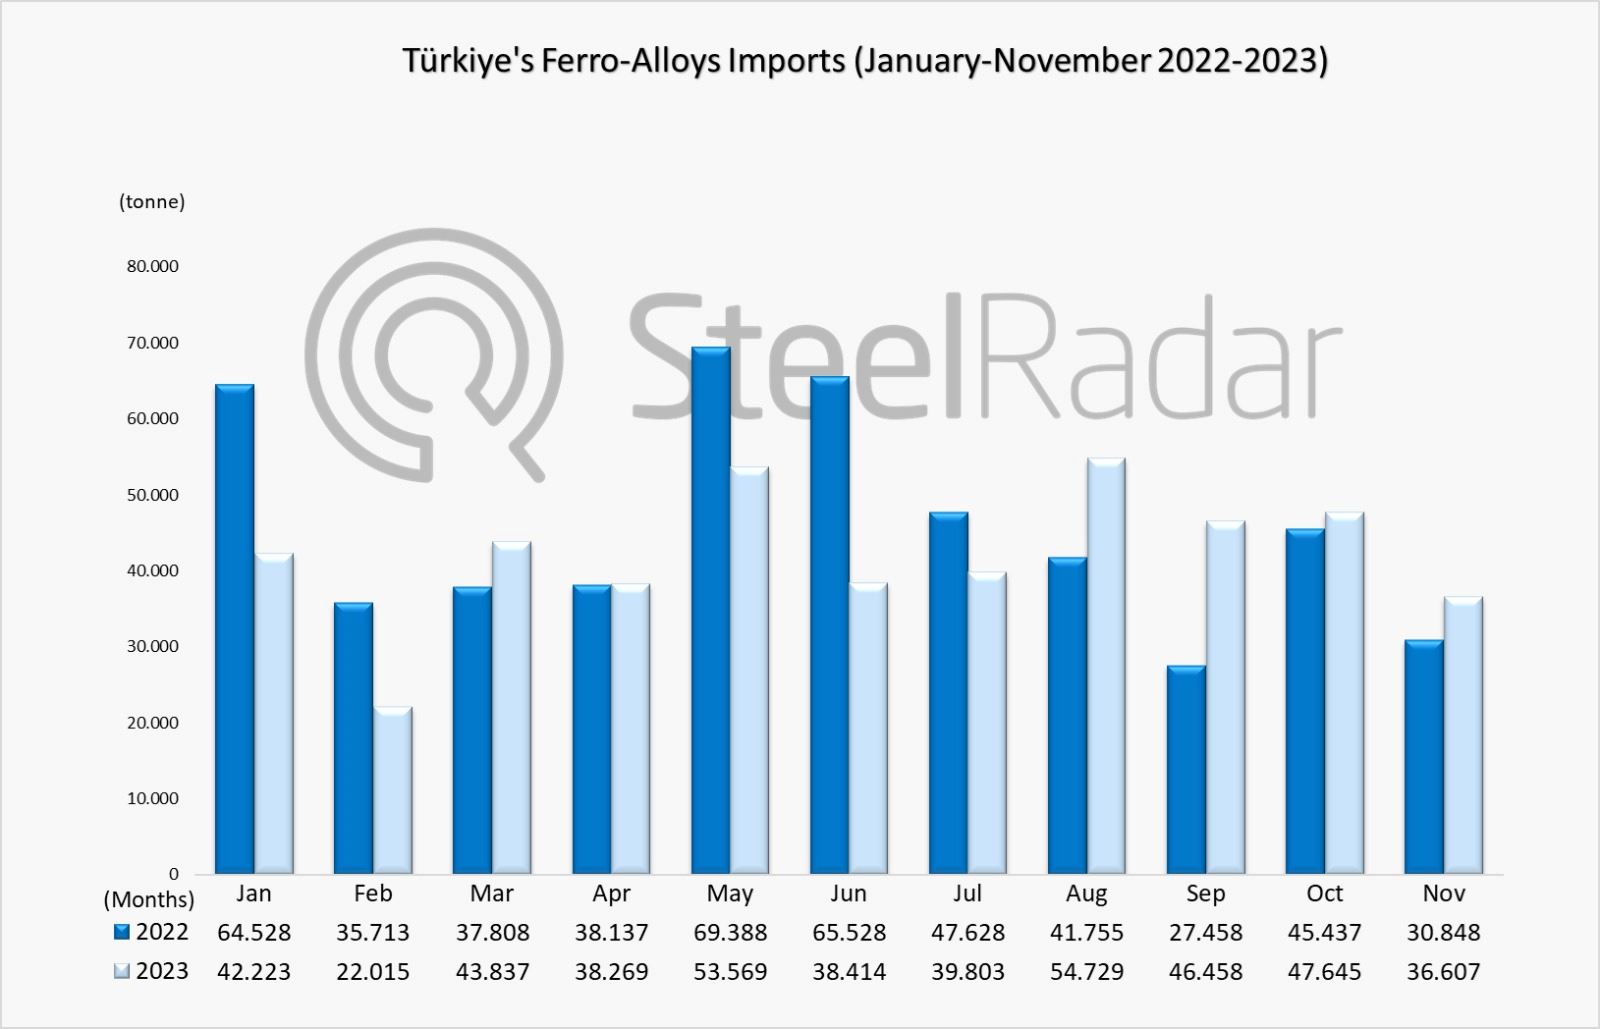 Türkiye's ferro alloy imports increased by 18.67% in November